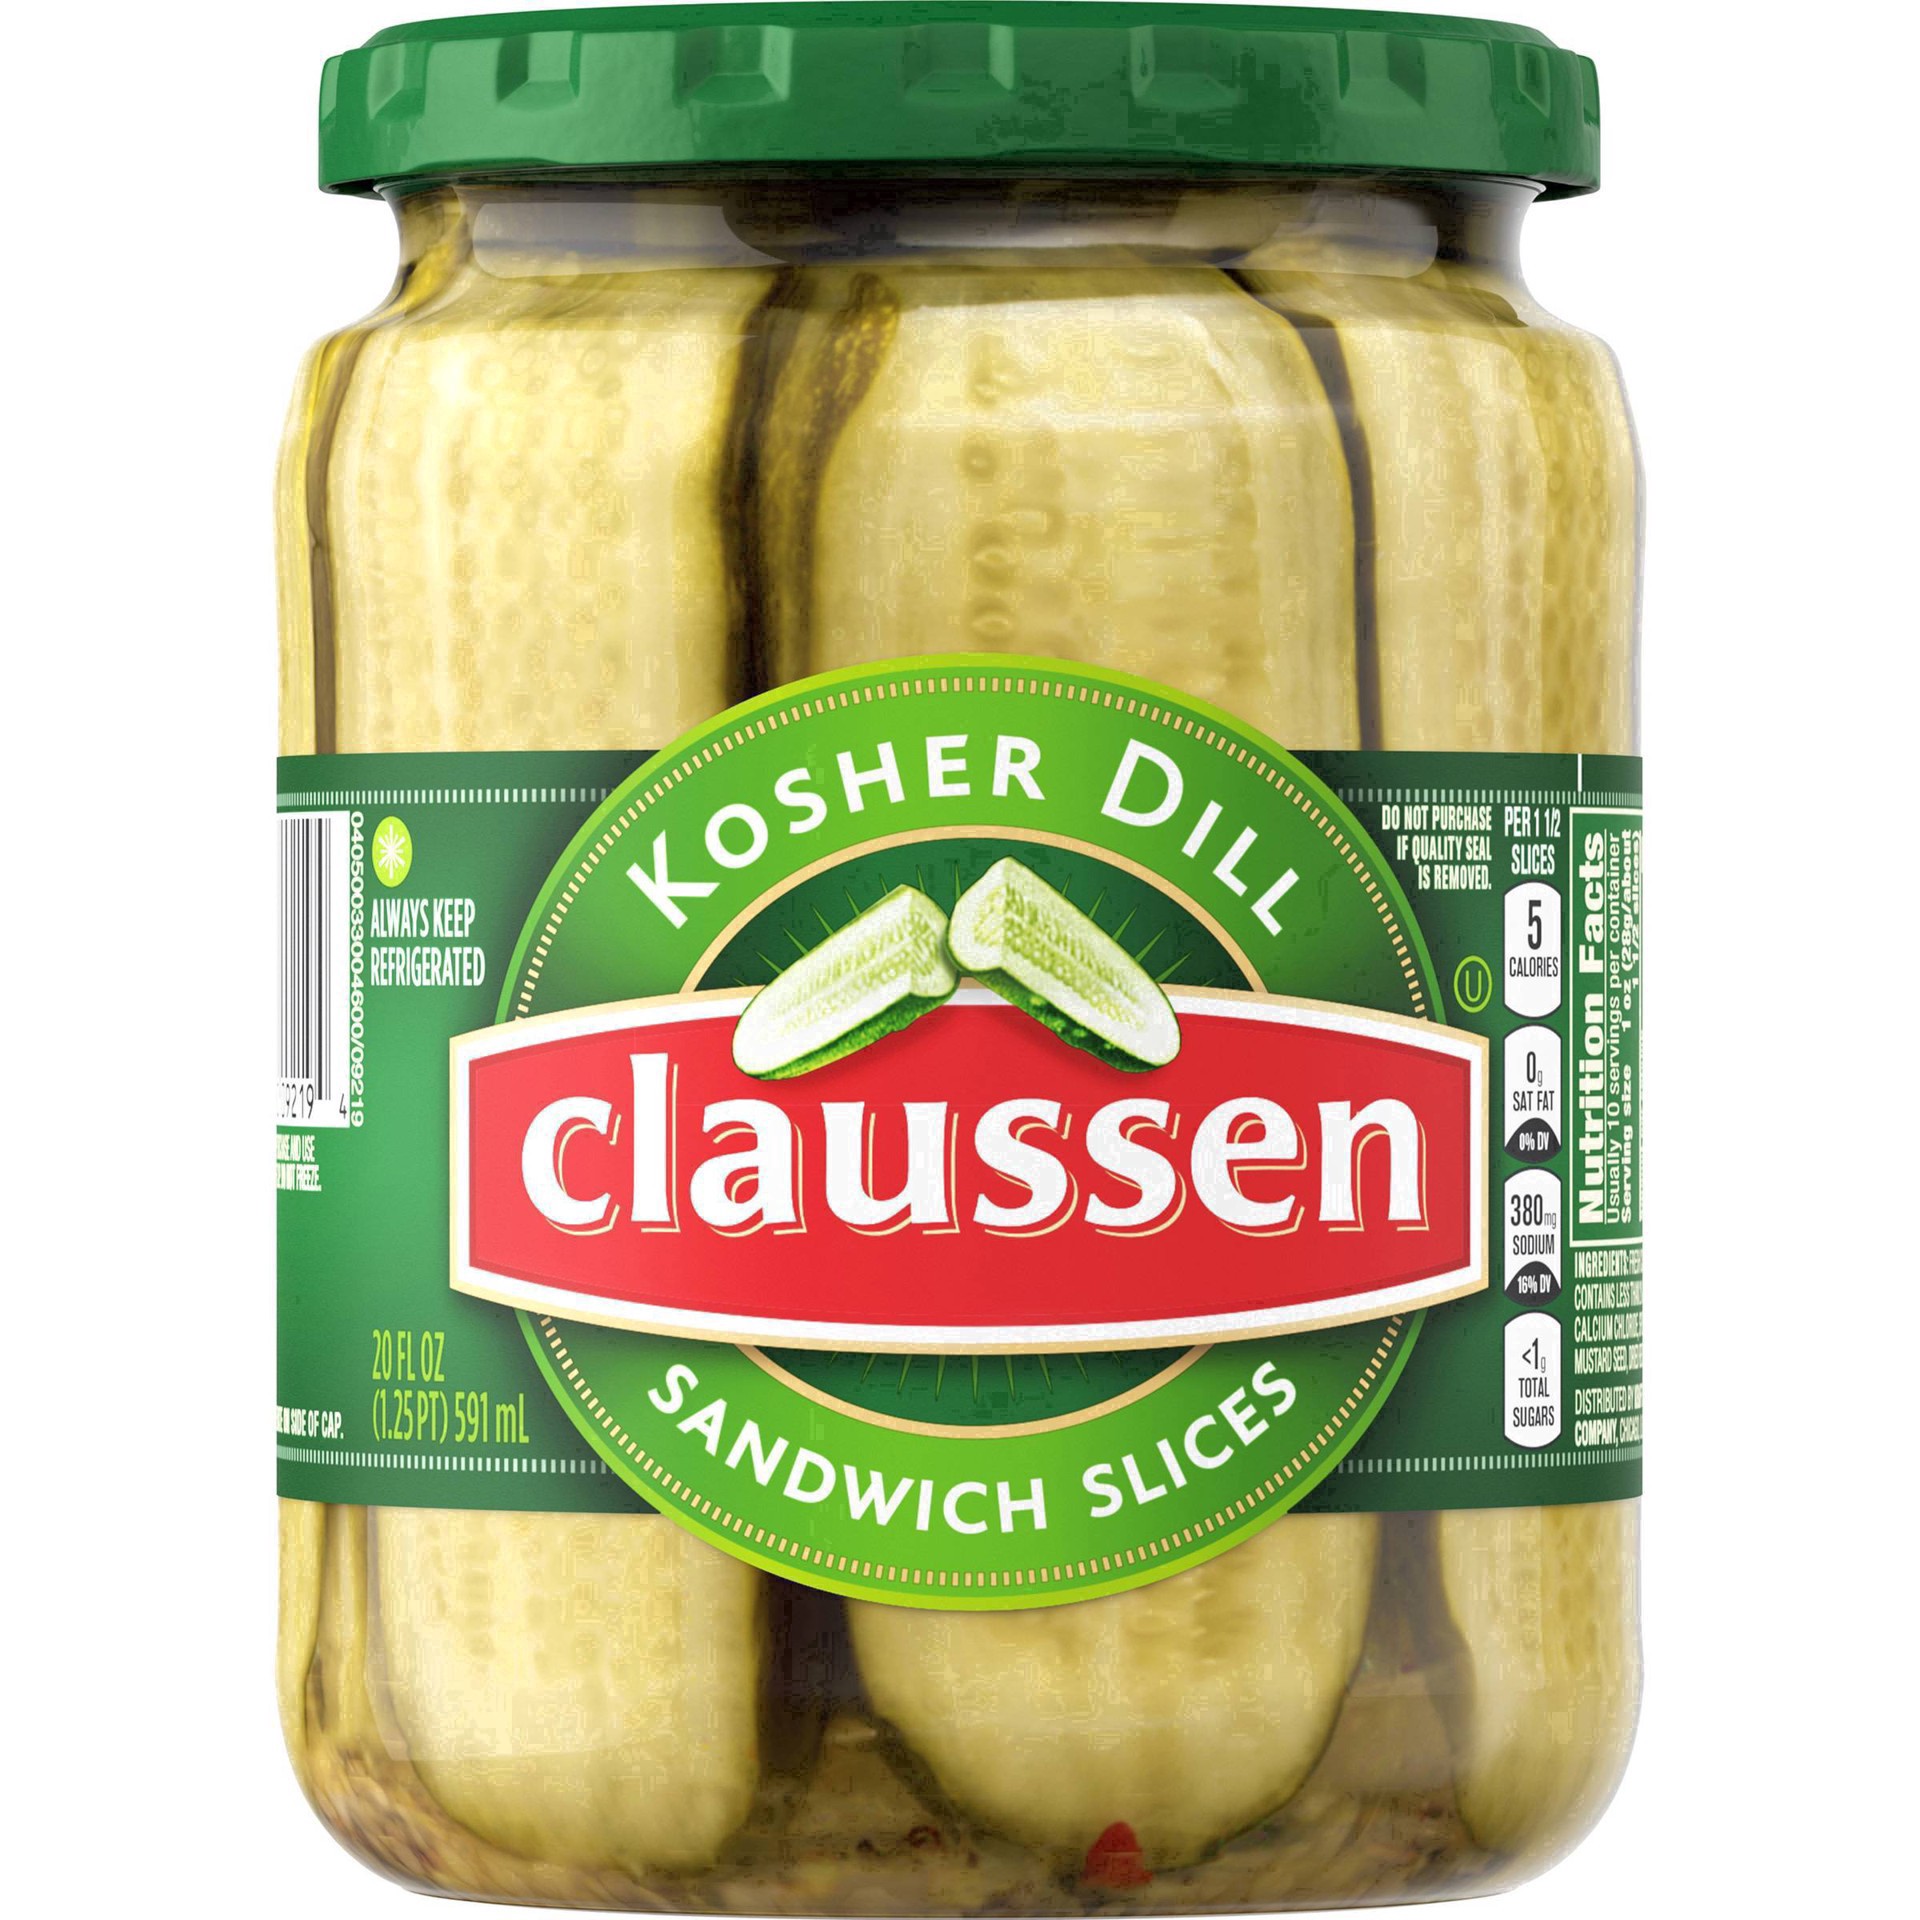 slide 31 of 144, Claussen Kosher Dill Pickle Sandwich Slices, 20 fl. oz. Jar, 20 fl oz